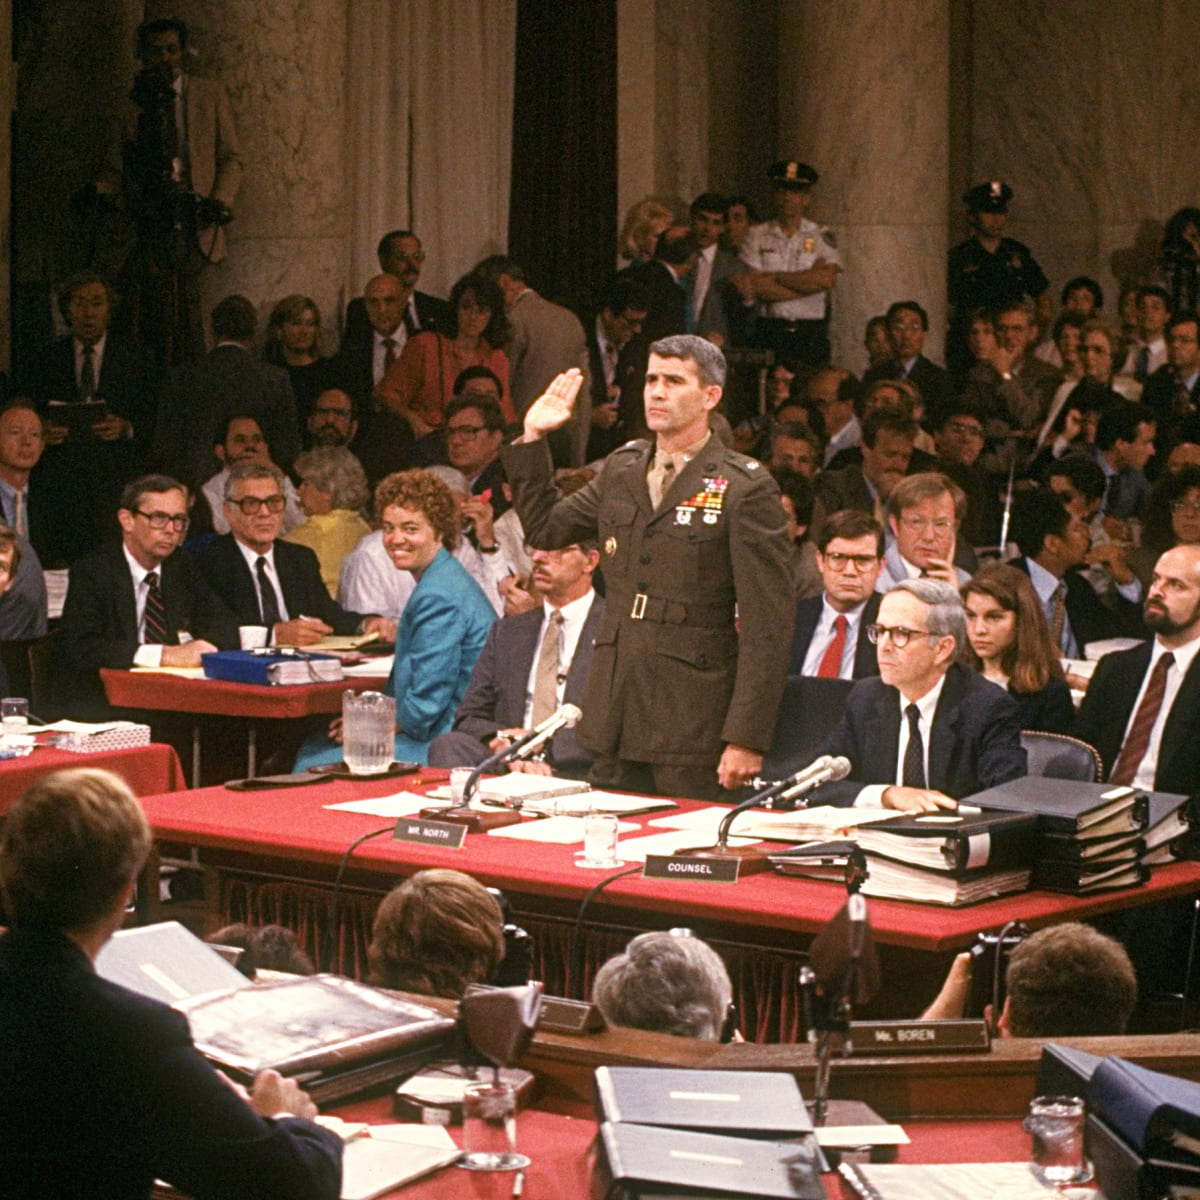 Vụ áp phe Iran-Contra đã khiến 11 thành viên của chính quyền Tổng thống Reaganđã bị kết án sau một loạt các cáo buộc liên quan.